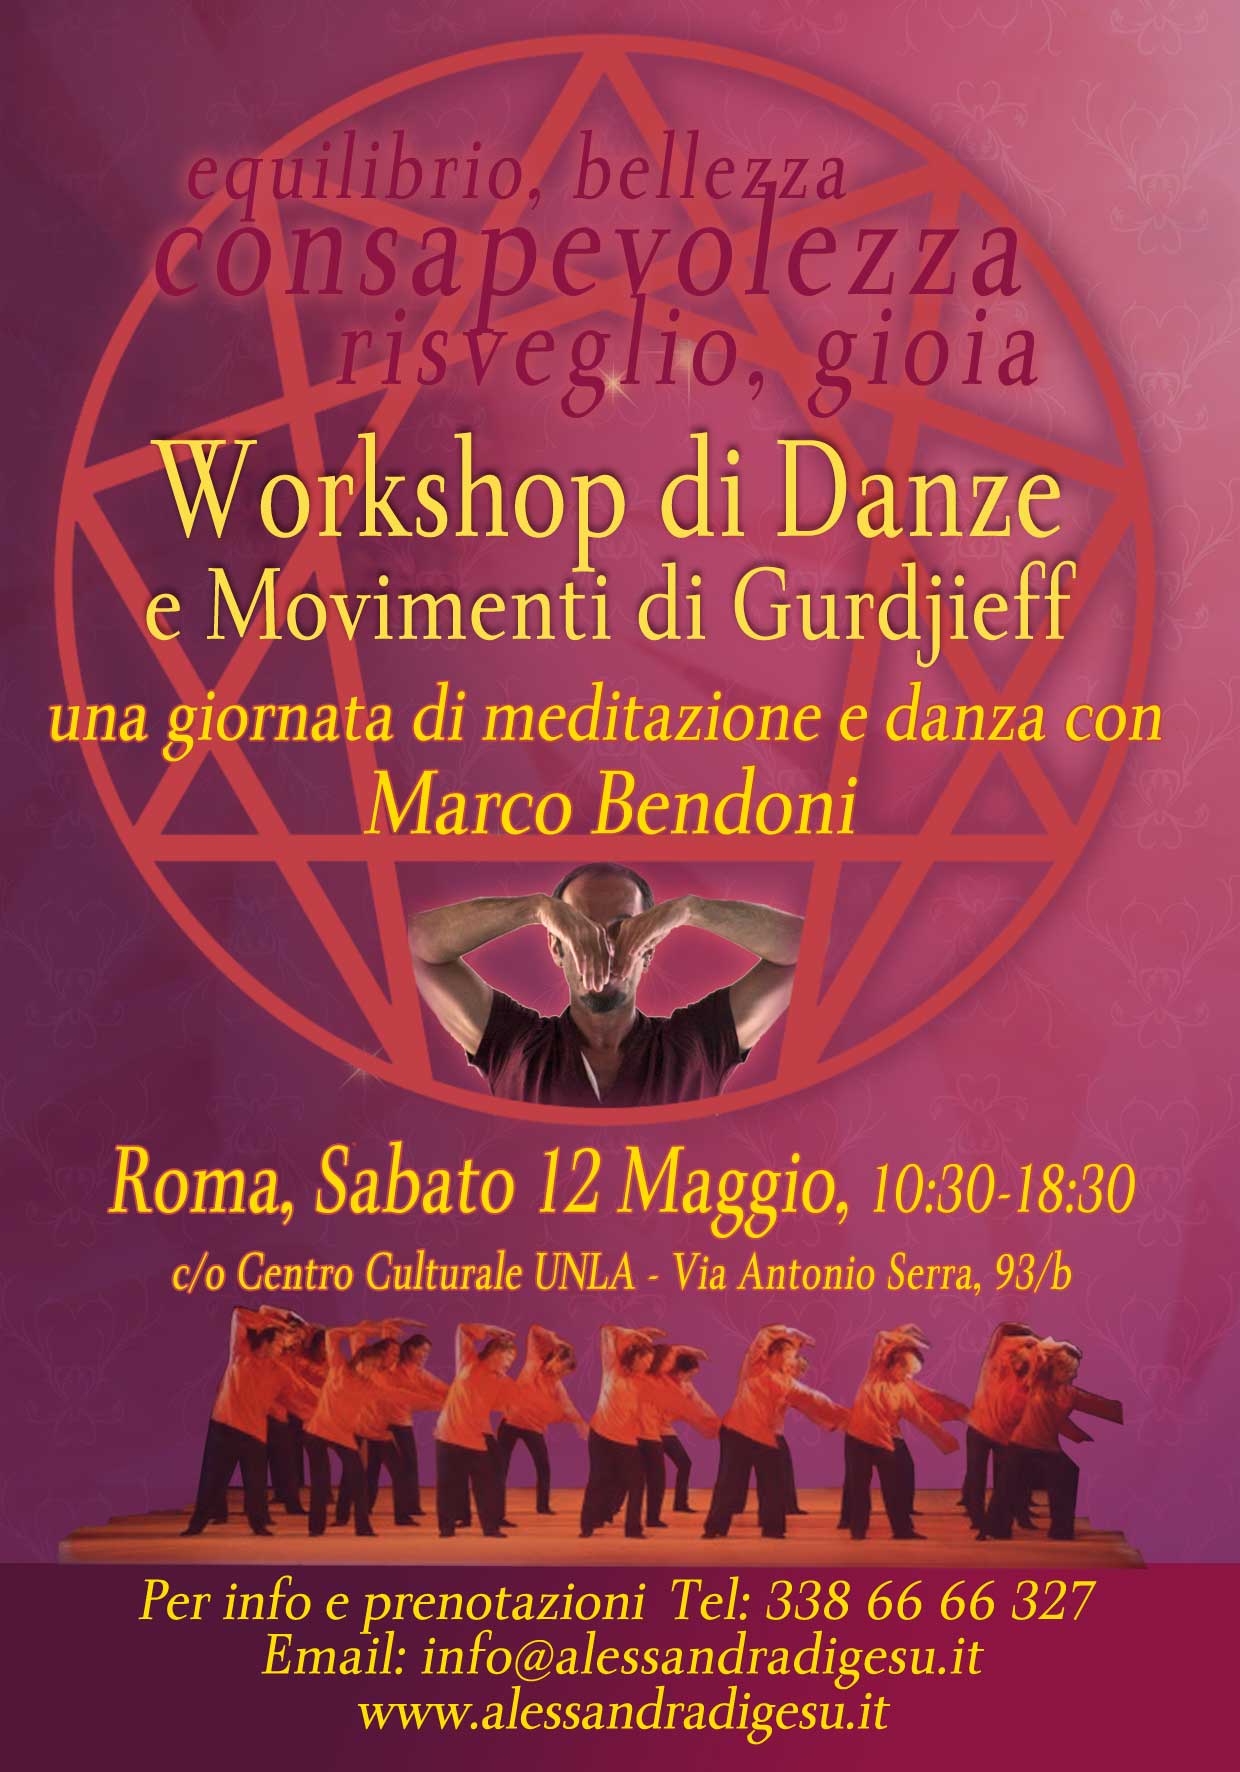 Workshop di Danze e Movimenti di Gurdjieff con Marco Bendoni